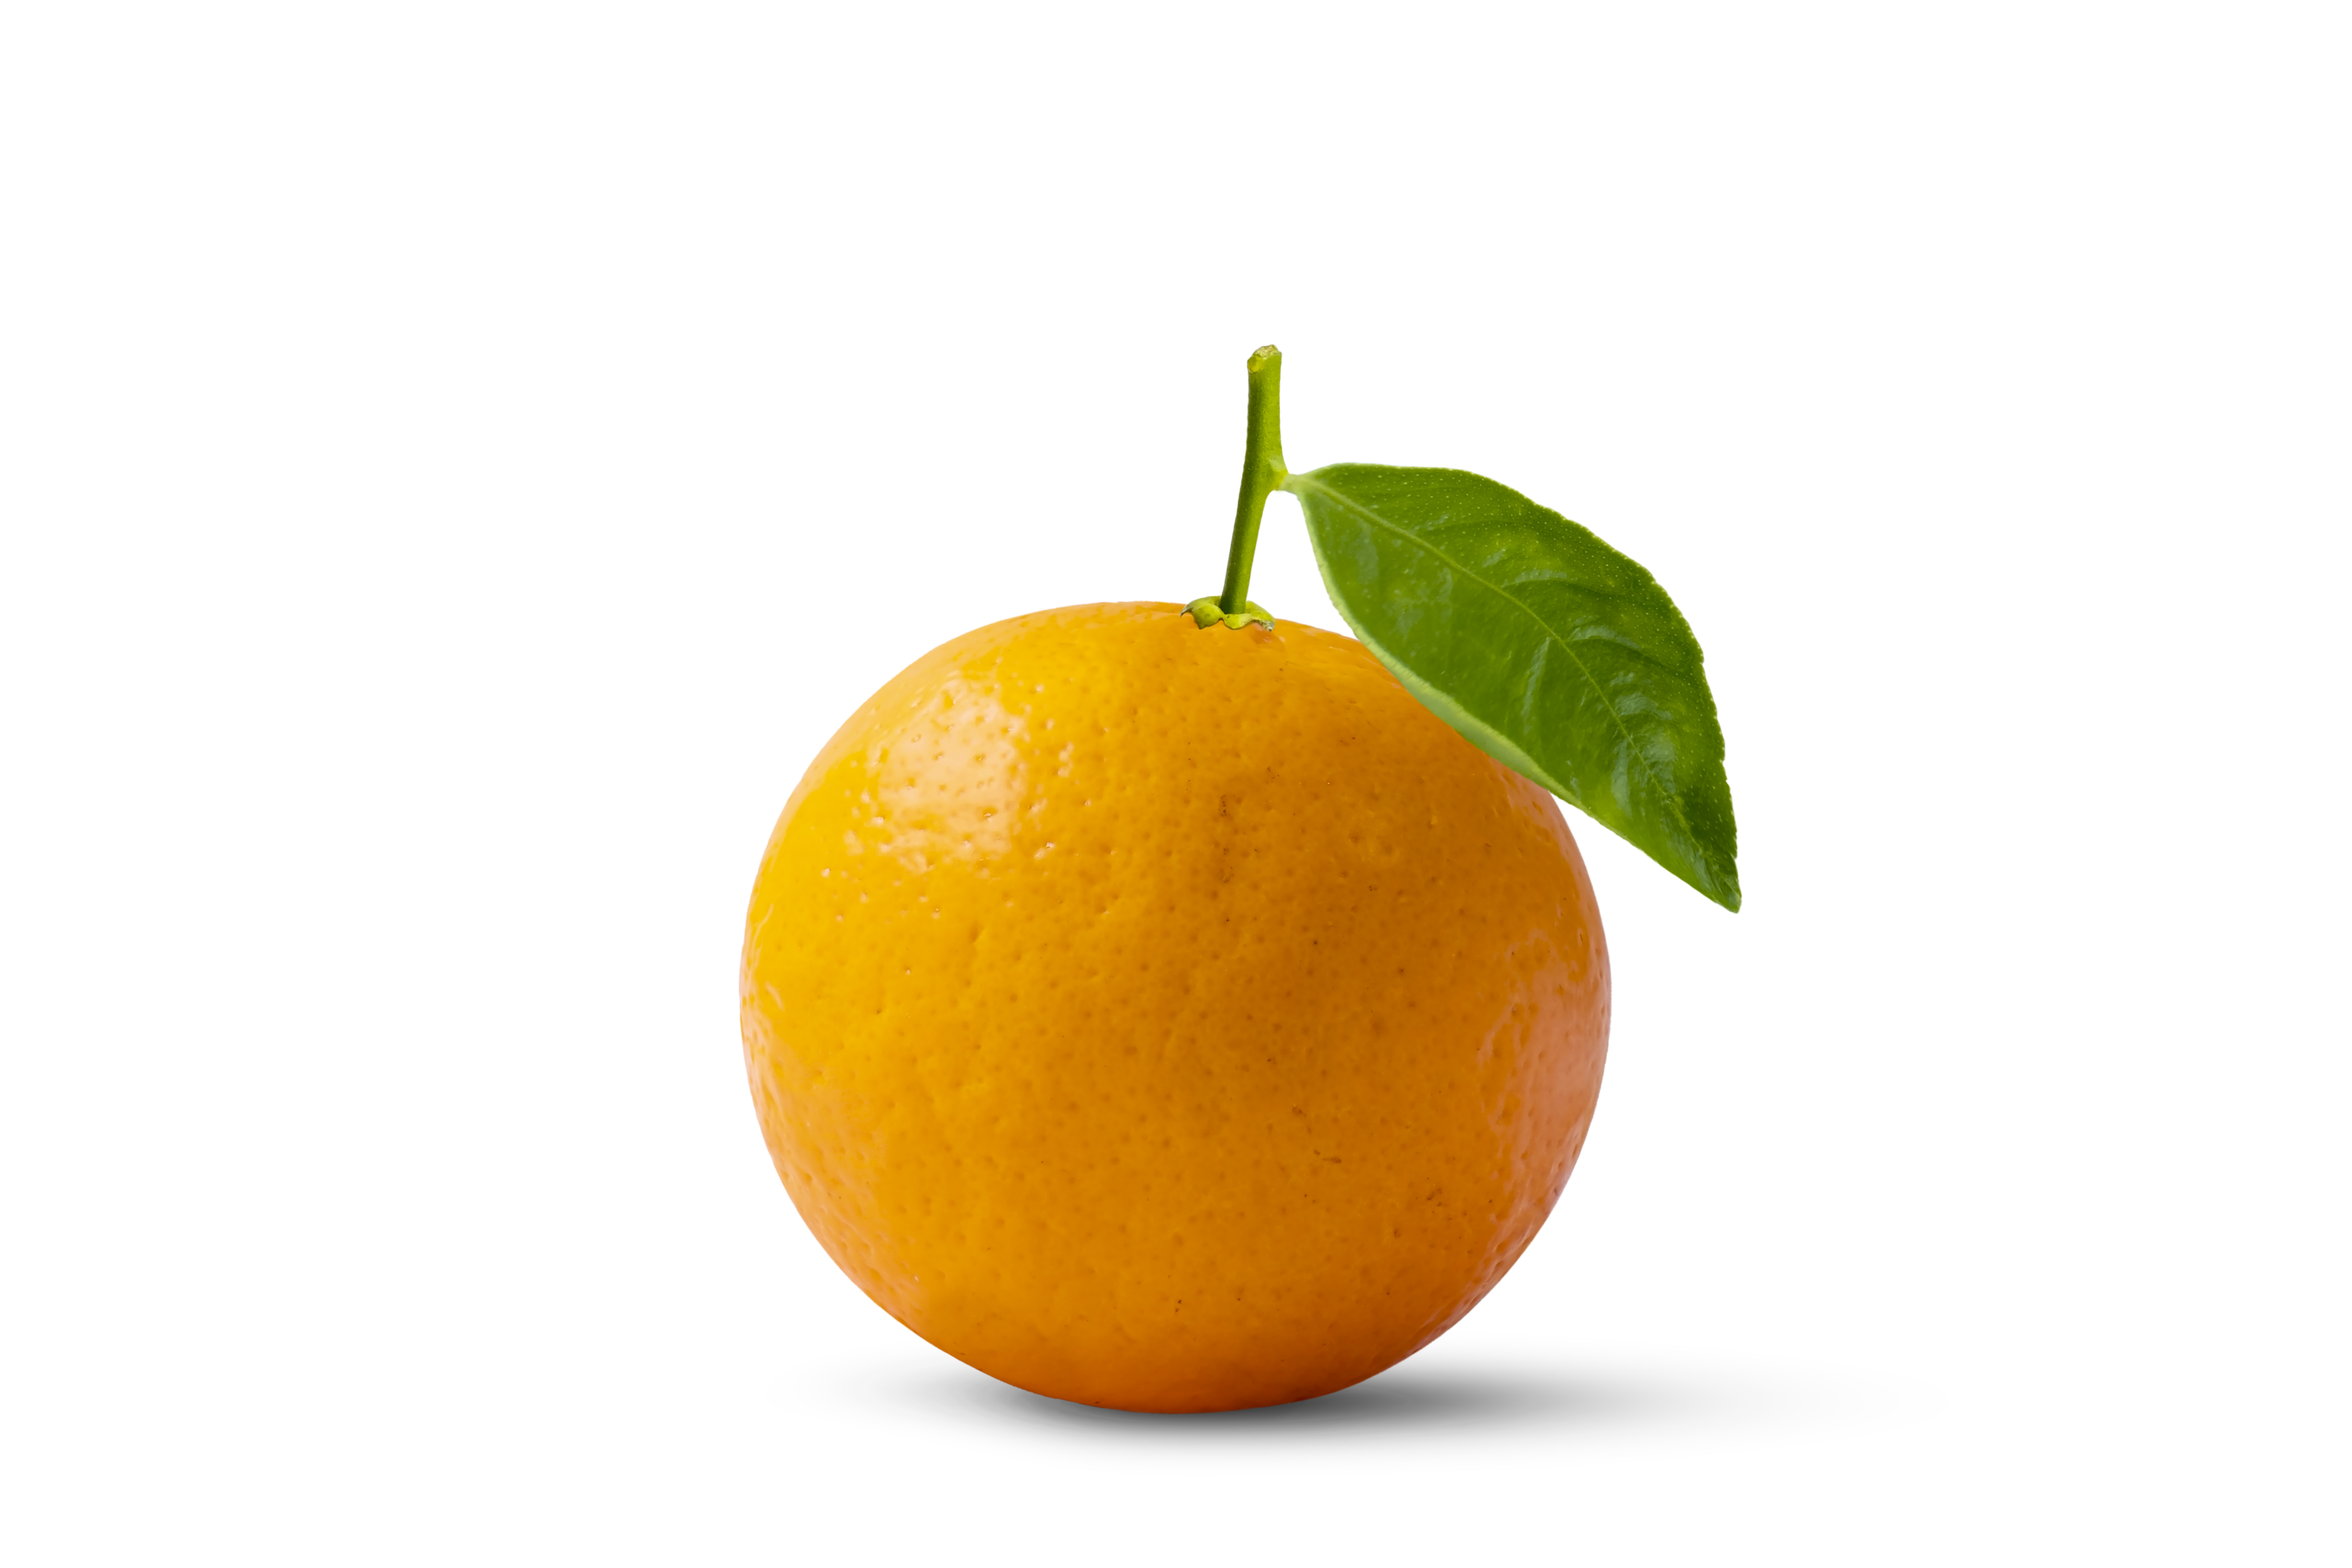 Trái cam không chỉ là một loại trái cây bổ dưỡng mà còn rất đẹp mắt với màu sắc tươi sáng. Hãy xem hình ảnh để khám phá vẻ đẹp của trái cam.